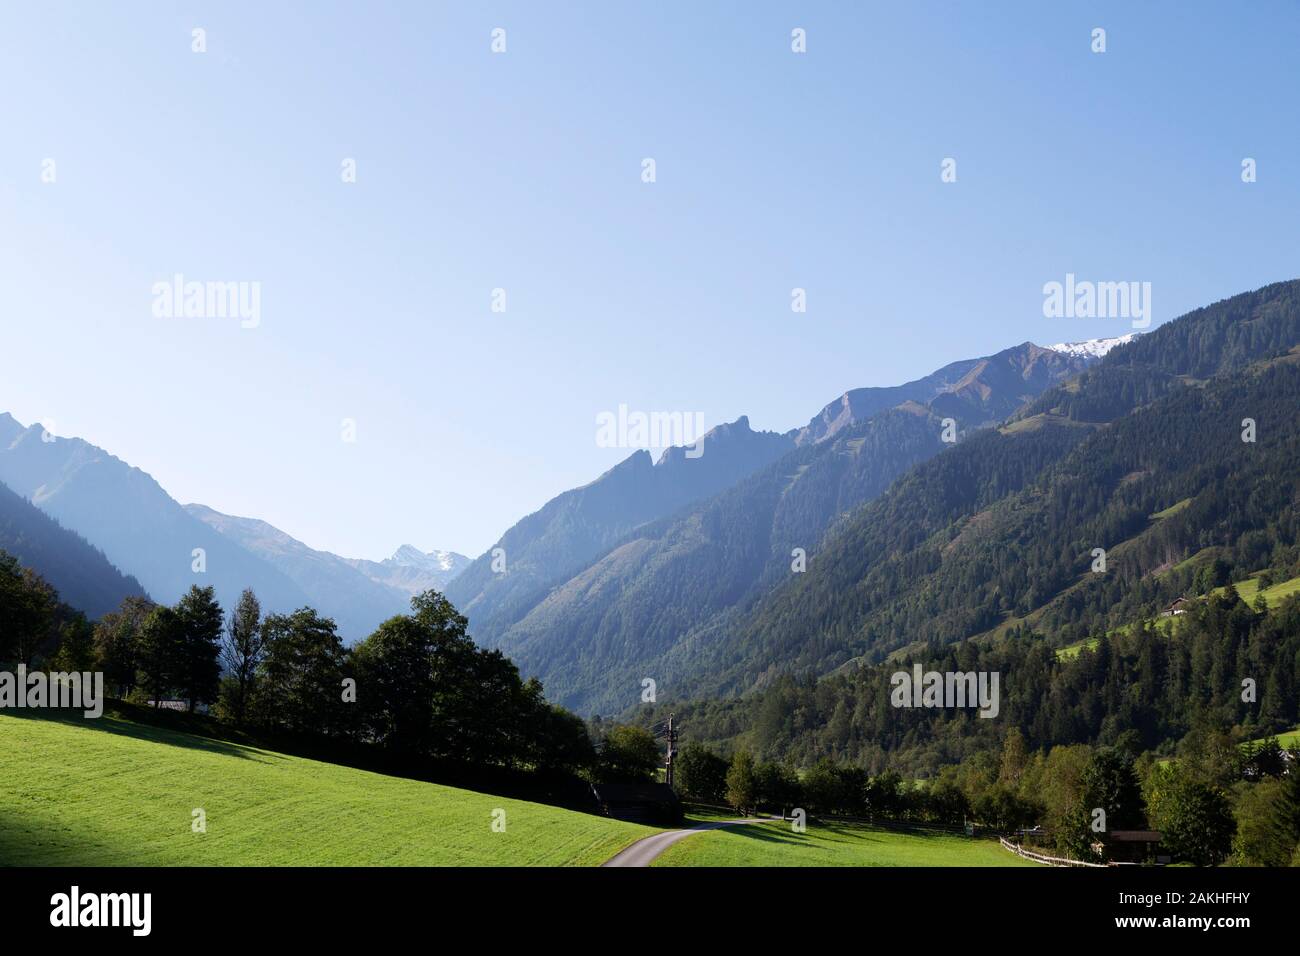 Ein Feldweg in Fuschtal (die Fuscher Tal) in der Nähe von Zell am See, Österreich. Die Hänge des Tals Berge sind stark von Tannen bewaldet. Stockfoto